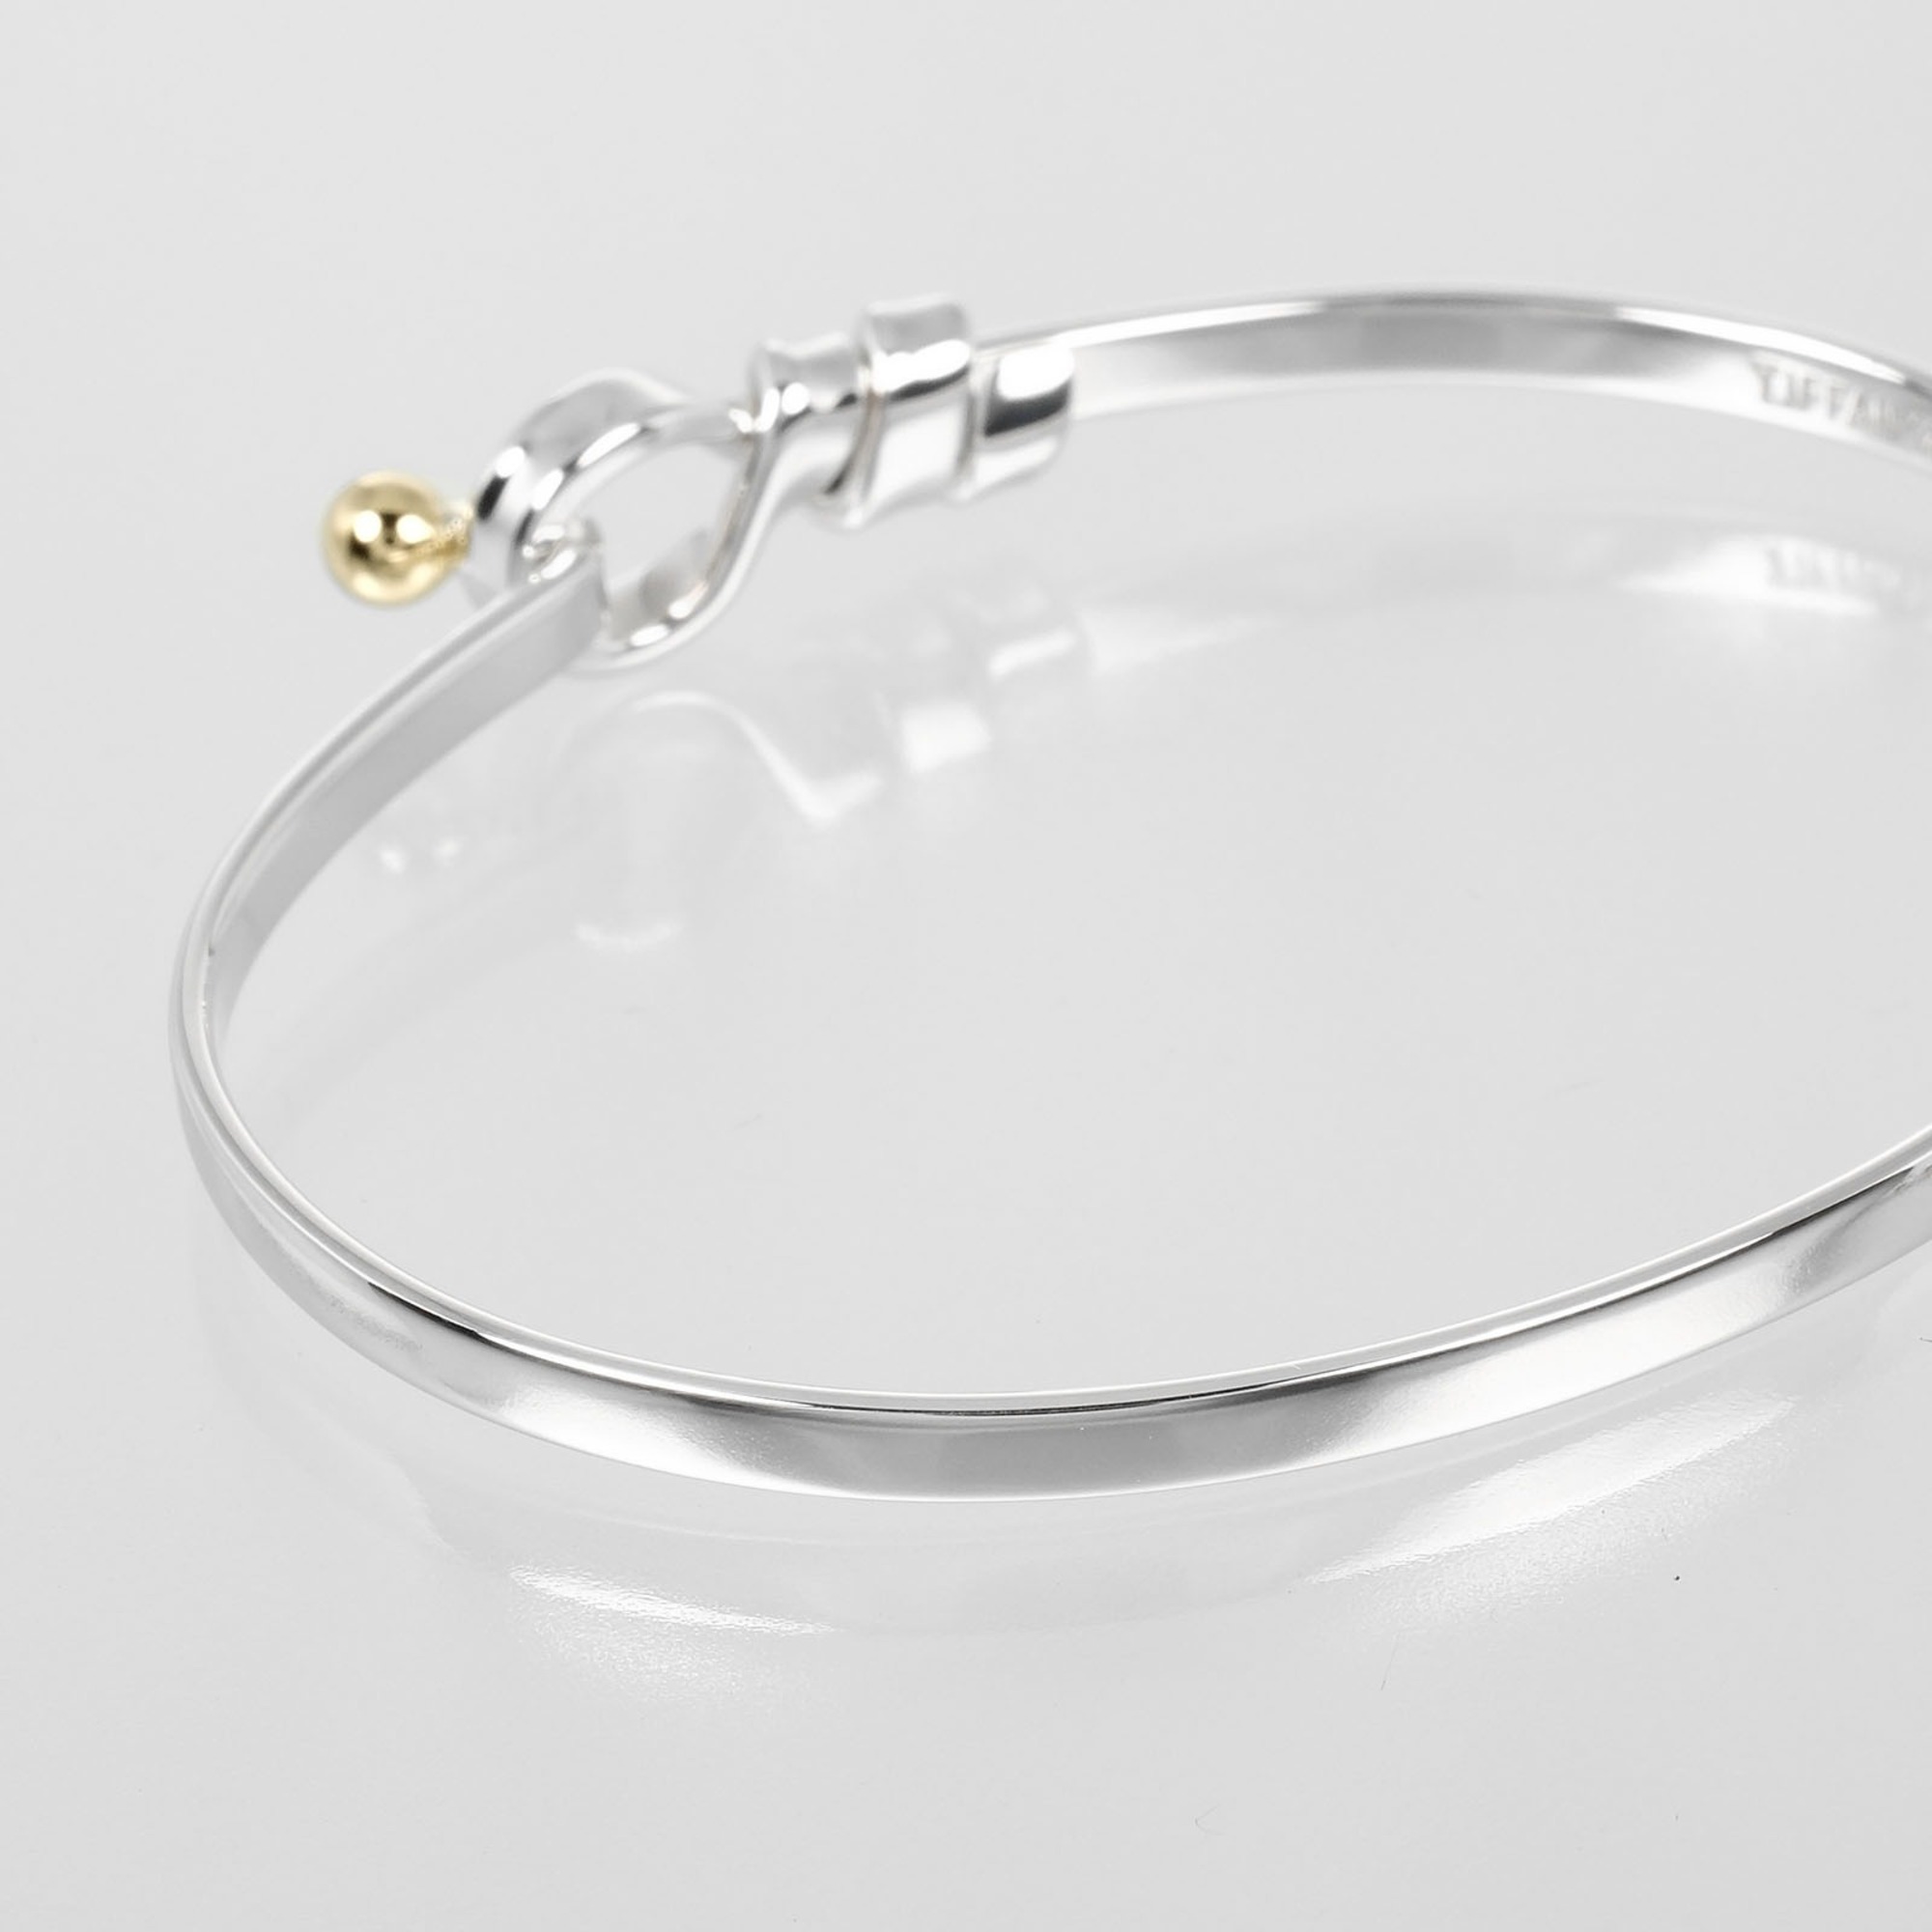 Tiffany & Co. Love Knot Bracelet, 925 Silver, 18K Gold, Approx. 9.15g I132724015